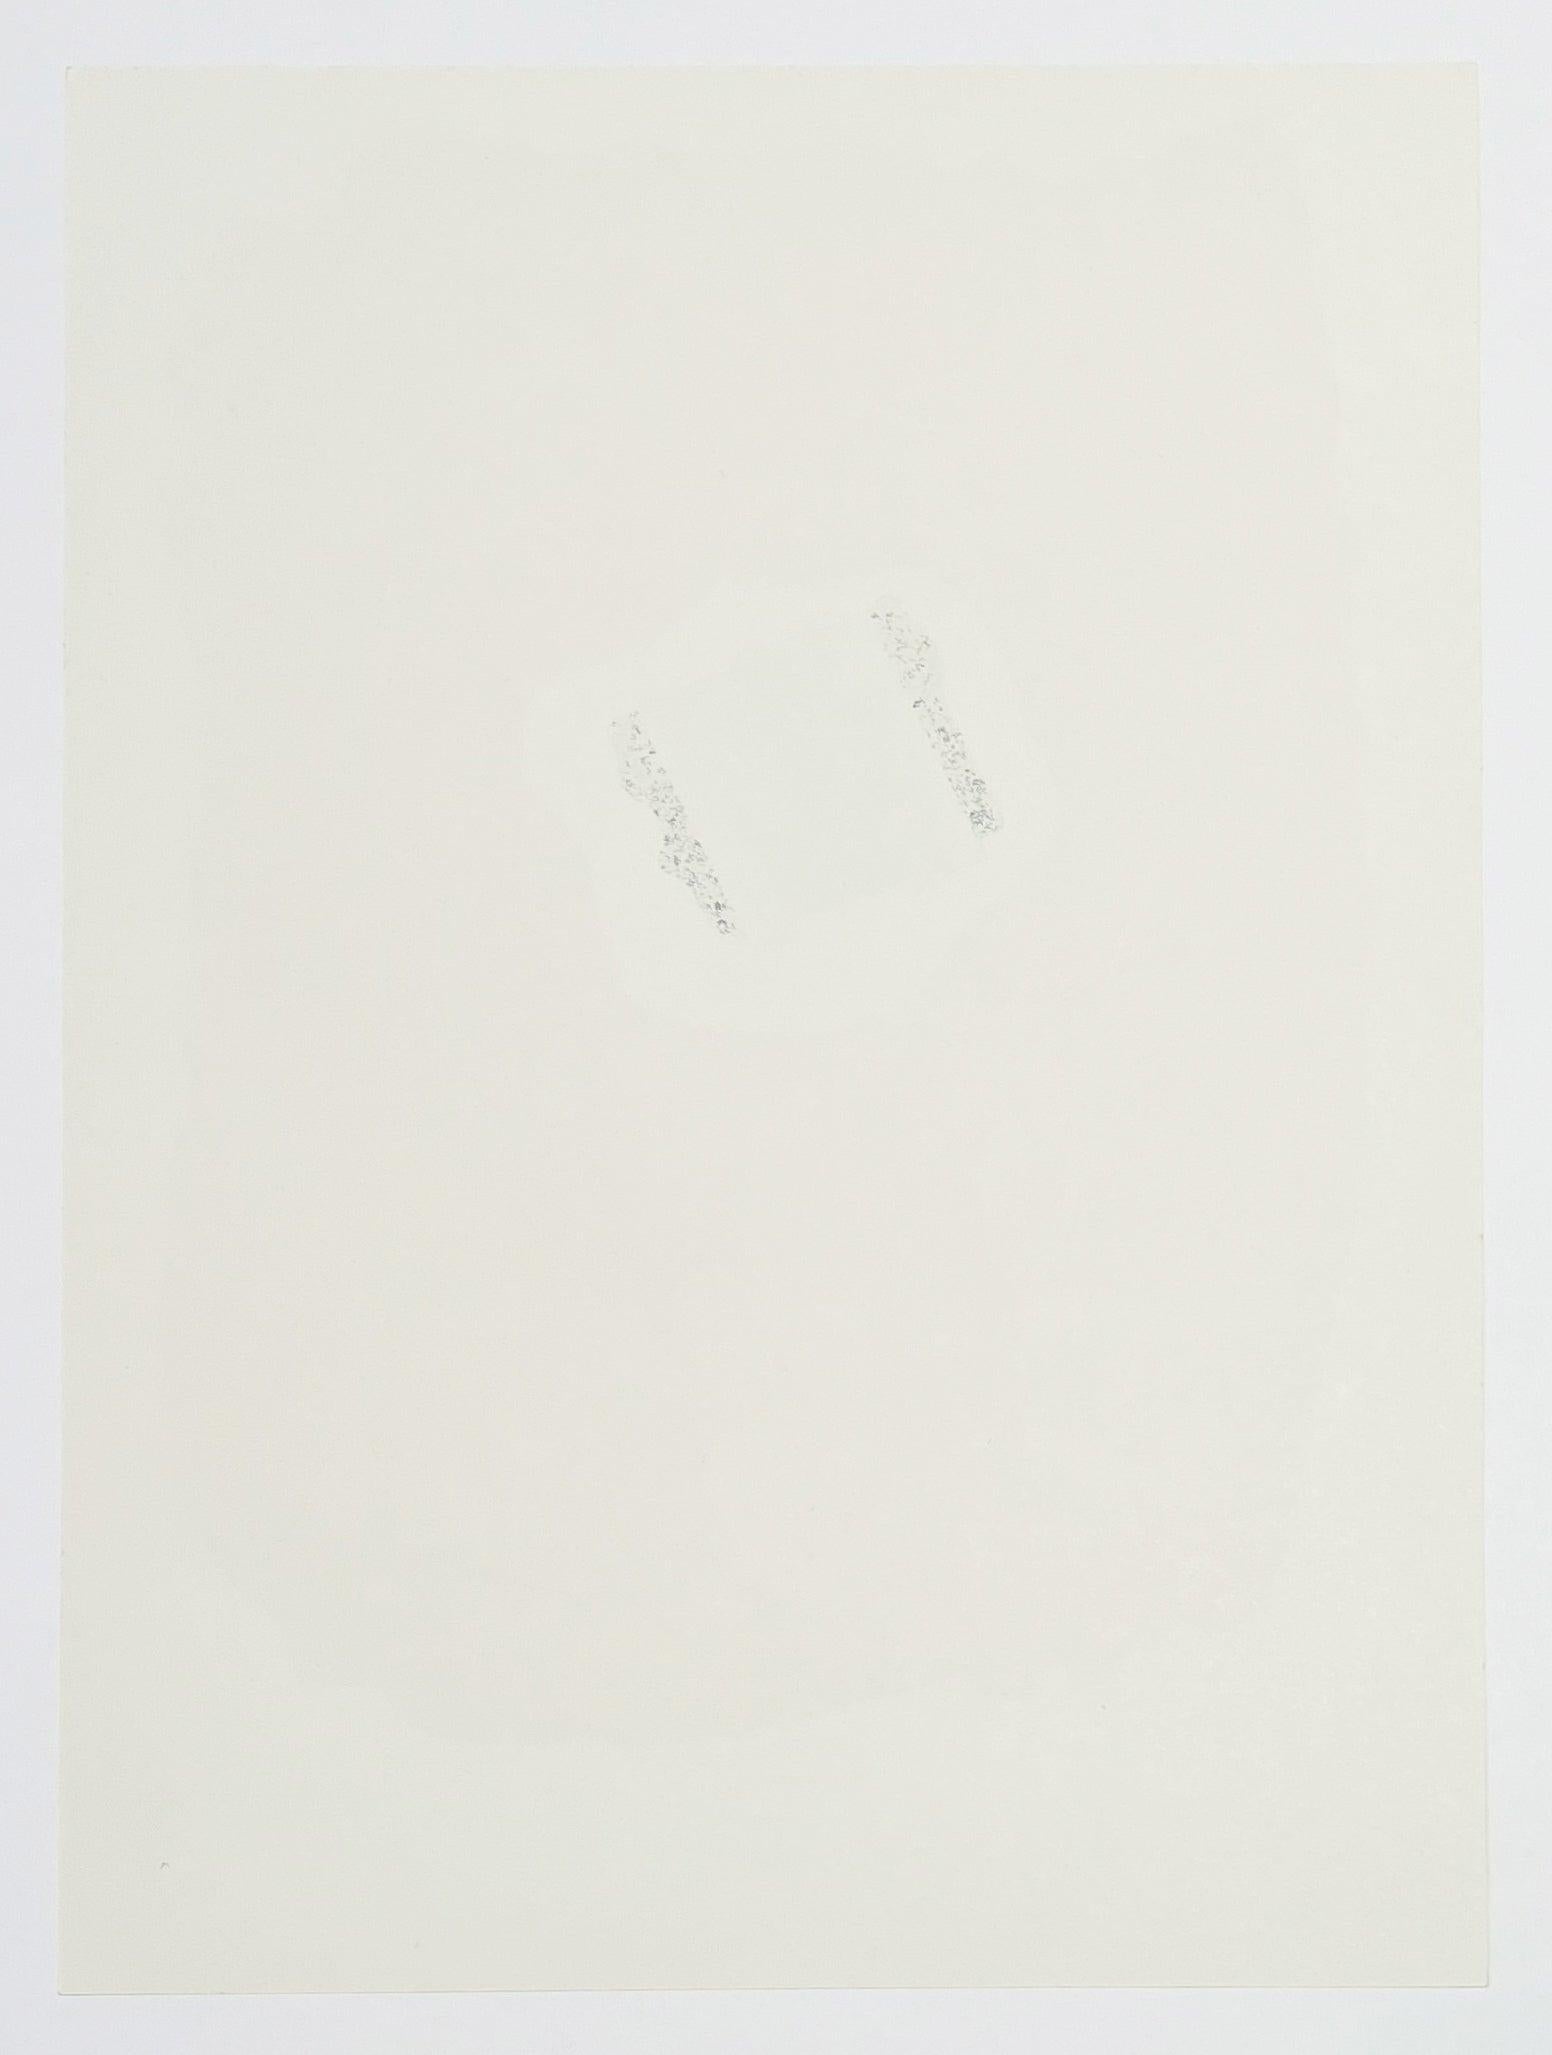 Künstler: Robert Motherwell
Titel: Tricolor (aus dem XXe Siecle)
Medium: Lithographie
Datum: 1973
Auflage: Unnumeriert
Rahmengröße: 18 1/2